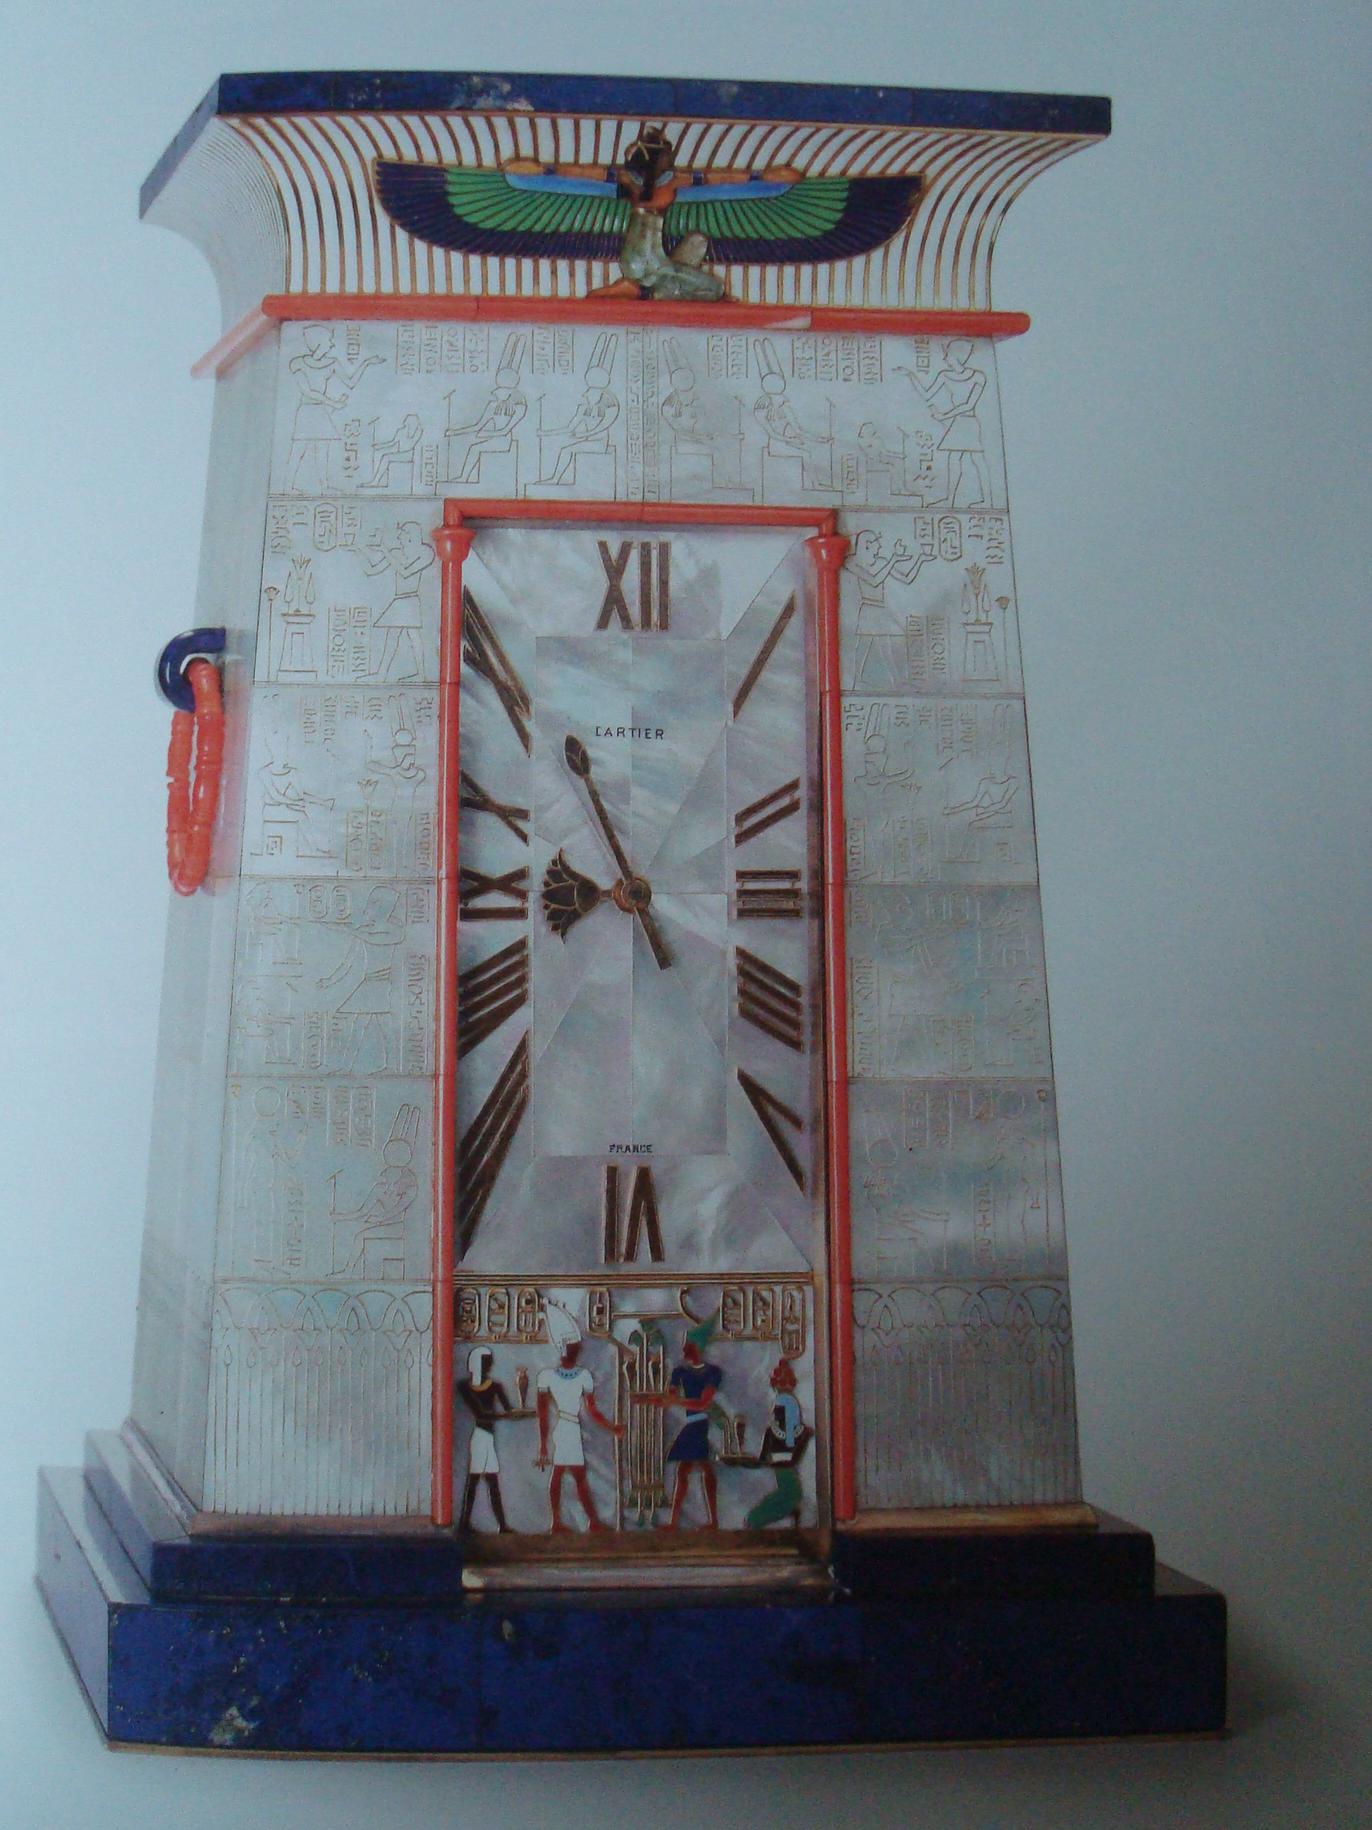 Рис. 10. Настольные часы в форме храма, 1927, Cartier.